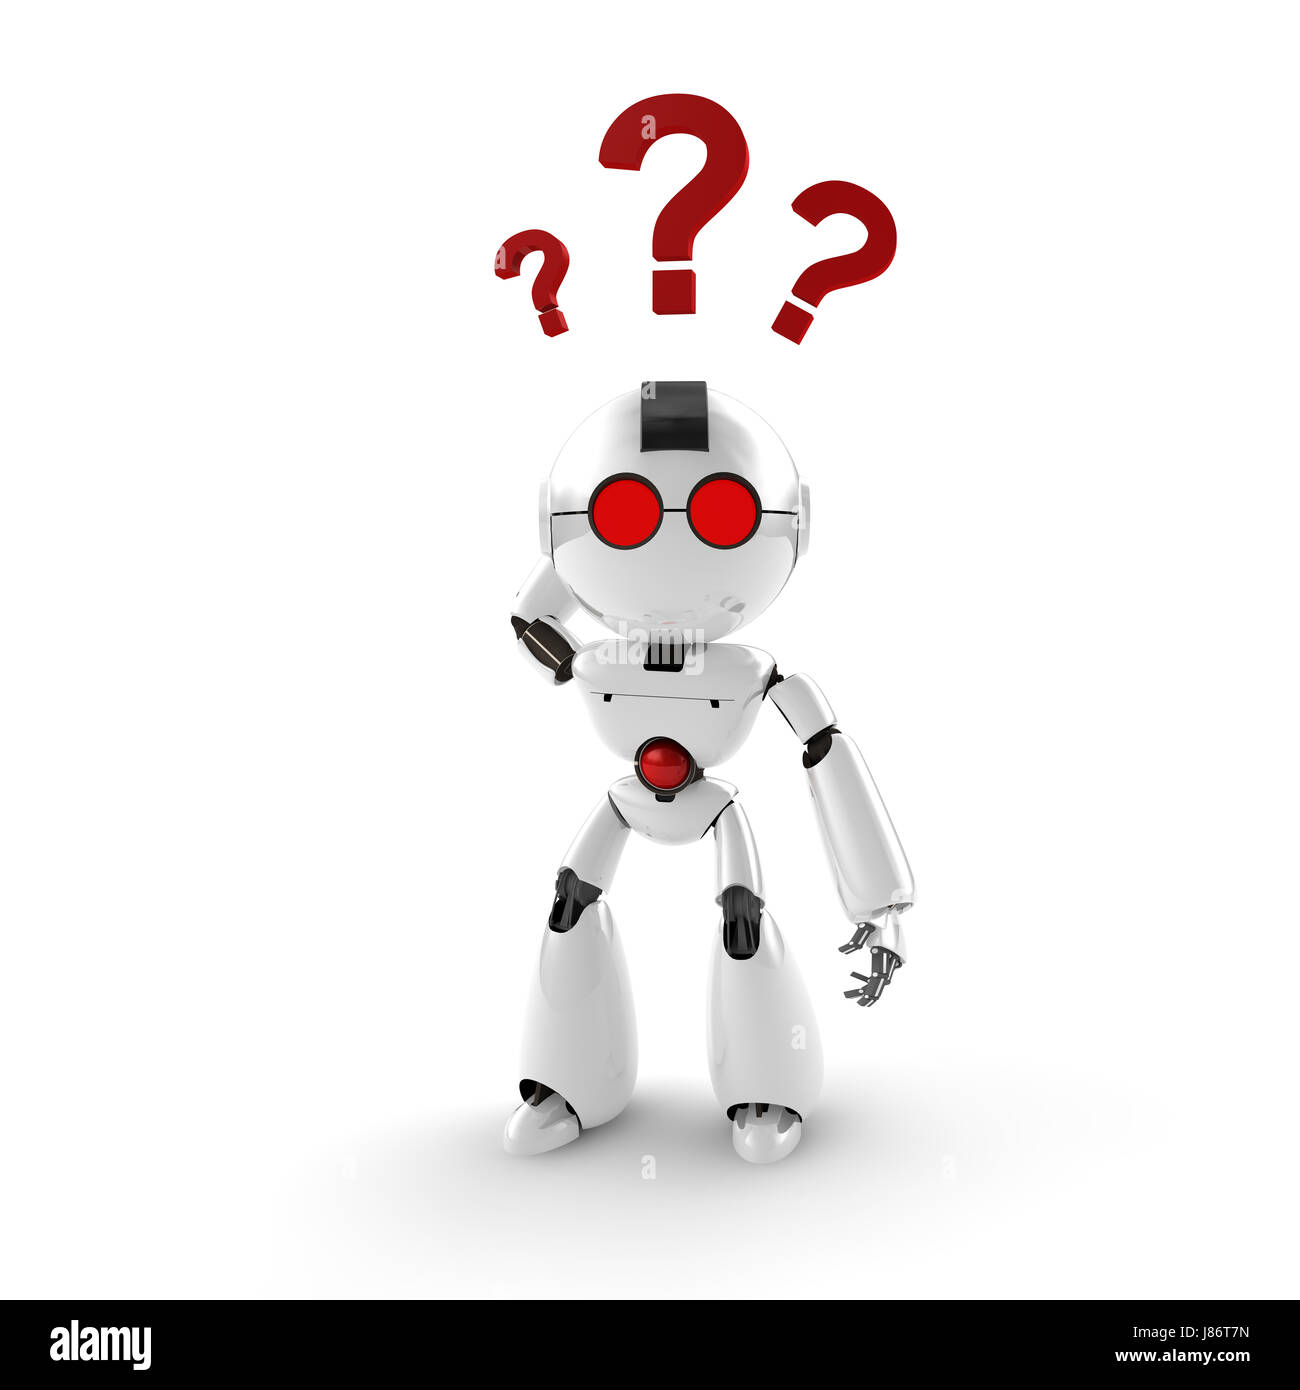 Abfrage gestellte Fragen Frage bedarf Fragezeichen Hilflosigkeit Ratlosigkeit Roboter Stockfoto